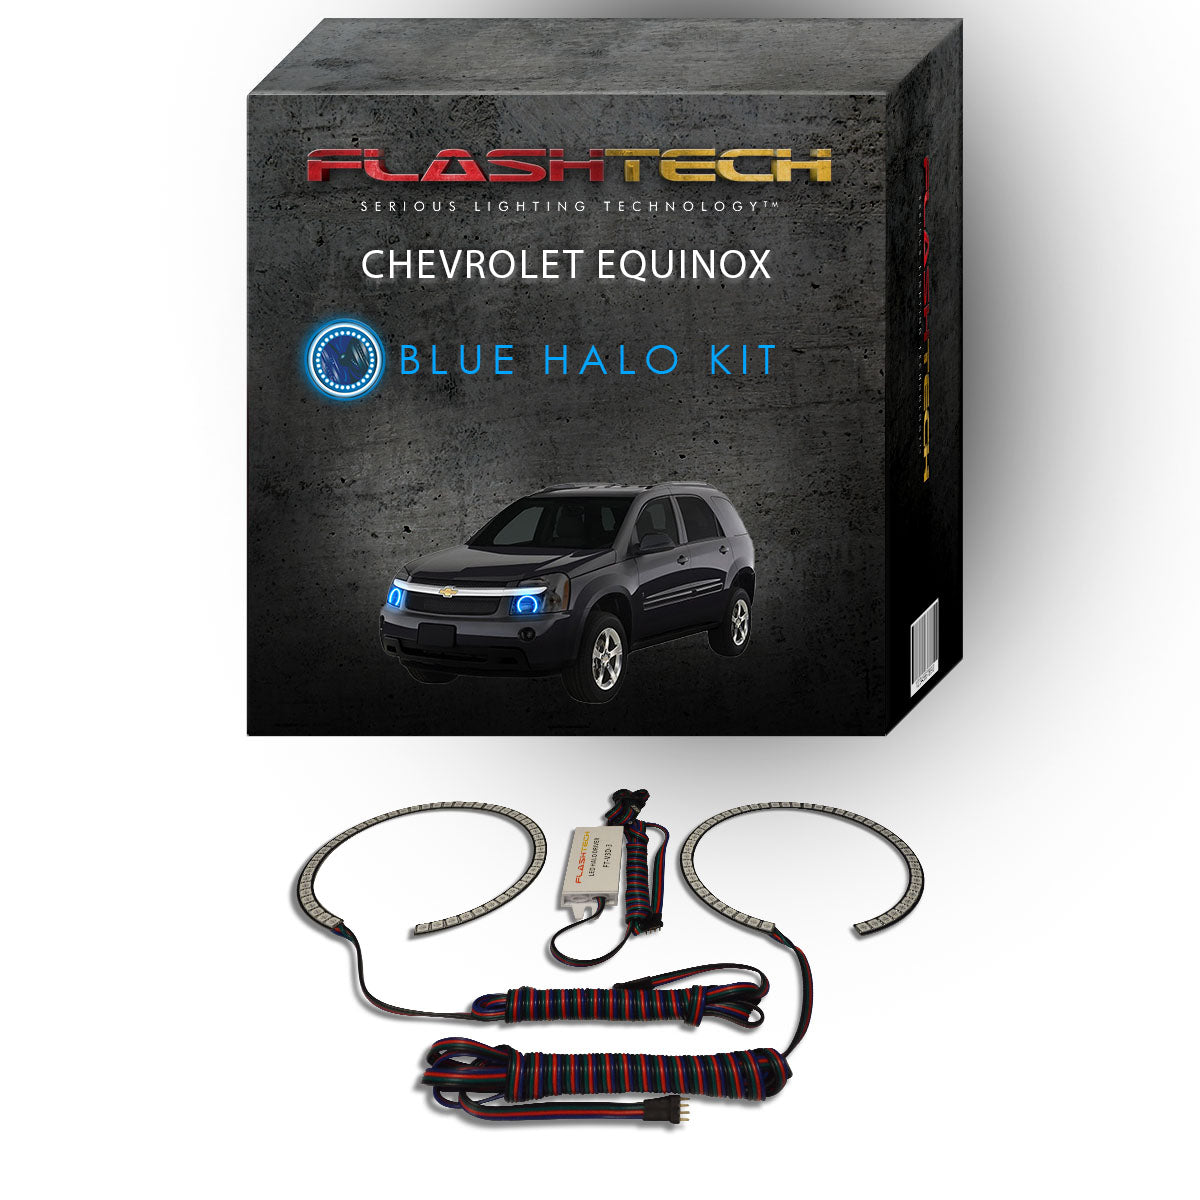 Chevrolet-Equinox-2005, 2006, 2007, 2008, 2009-LED-Halo-Headlights-RGB-No Remote-CY-EQ0509-V3H